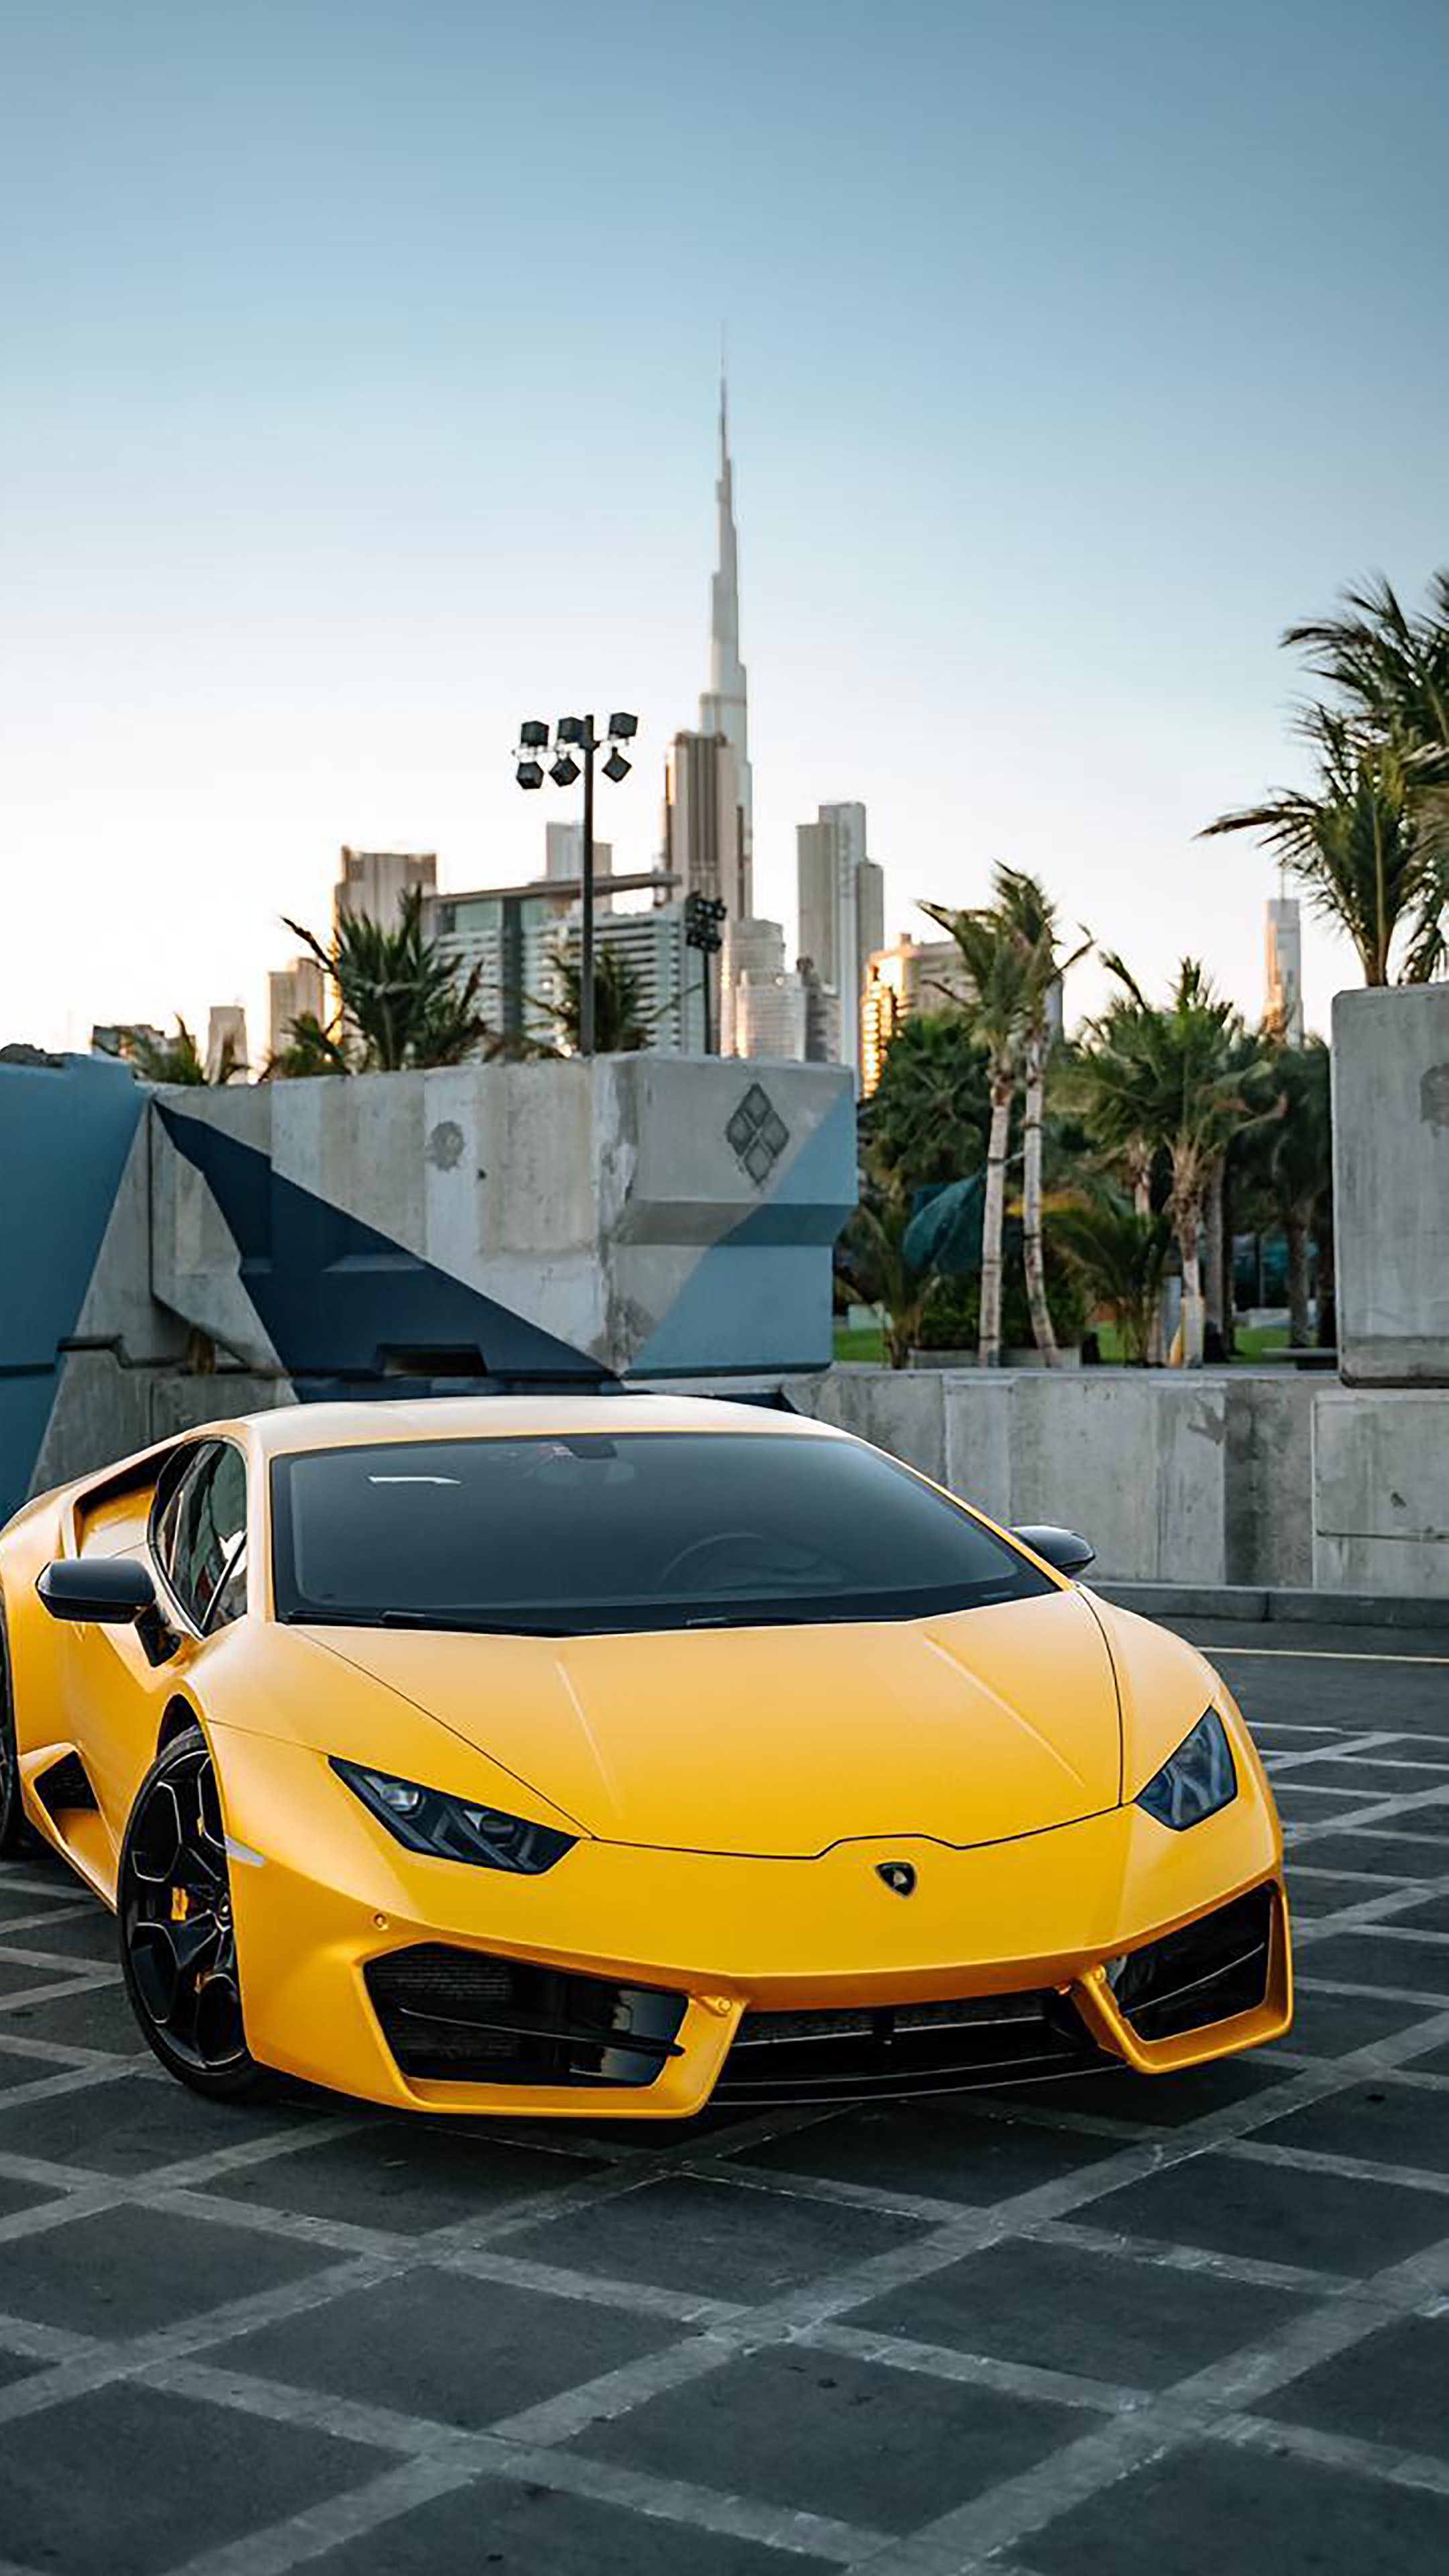 Lamborghini: Bạn là một fan của những chiến mã siêu sang đến từ Lamborghini? Hãy tưởng tượng mình đang lái chiếc siêu xe này trên đường phố với tốc độ nhanh như cắt. Bạn sẽ cảm thấy như một vị vua trên chiếc ngai vàng của riêng mình. Hãy xem hình ảnh và trải nghiệm cảm giác điều khiển siêu xe đẳng cấp.